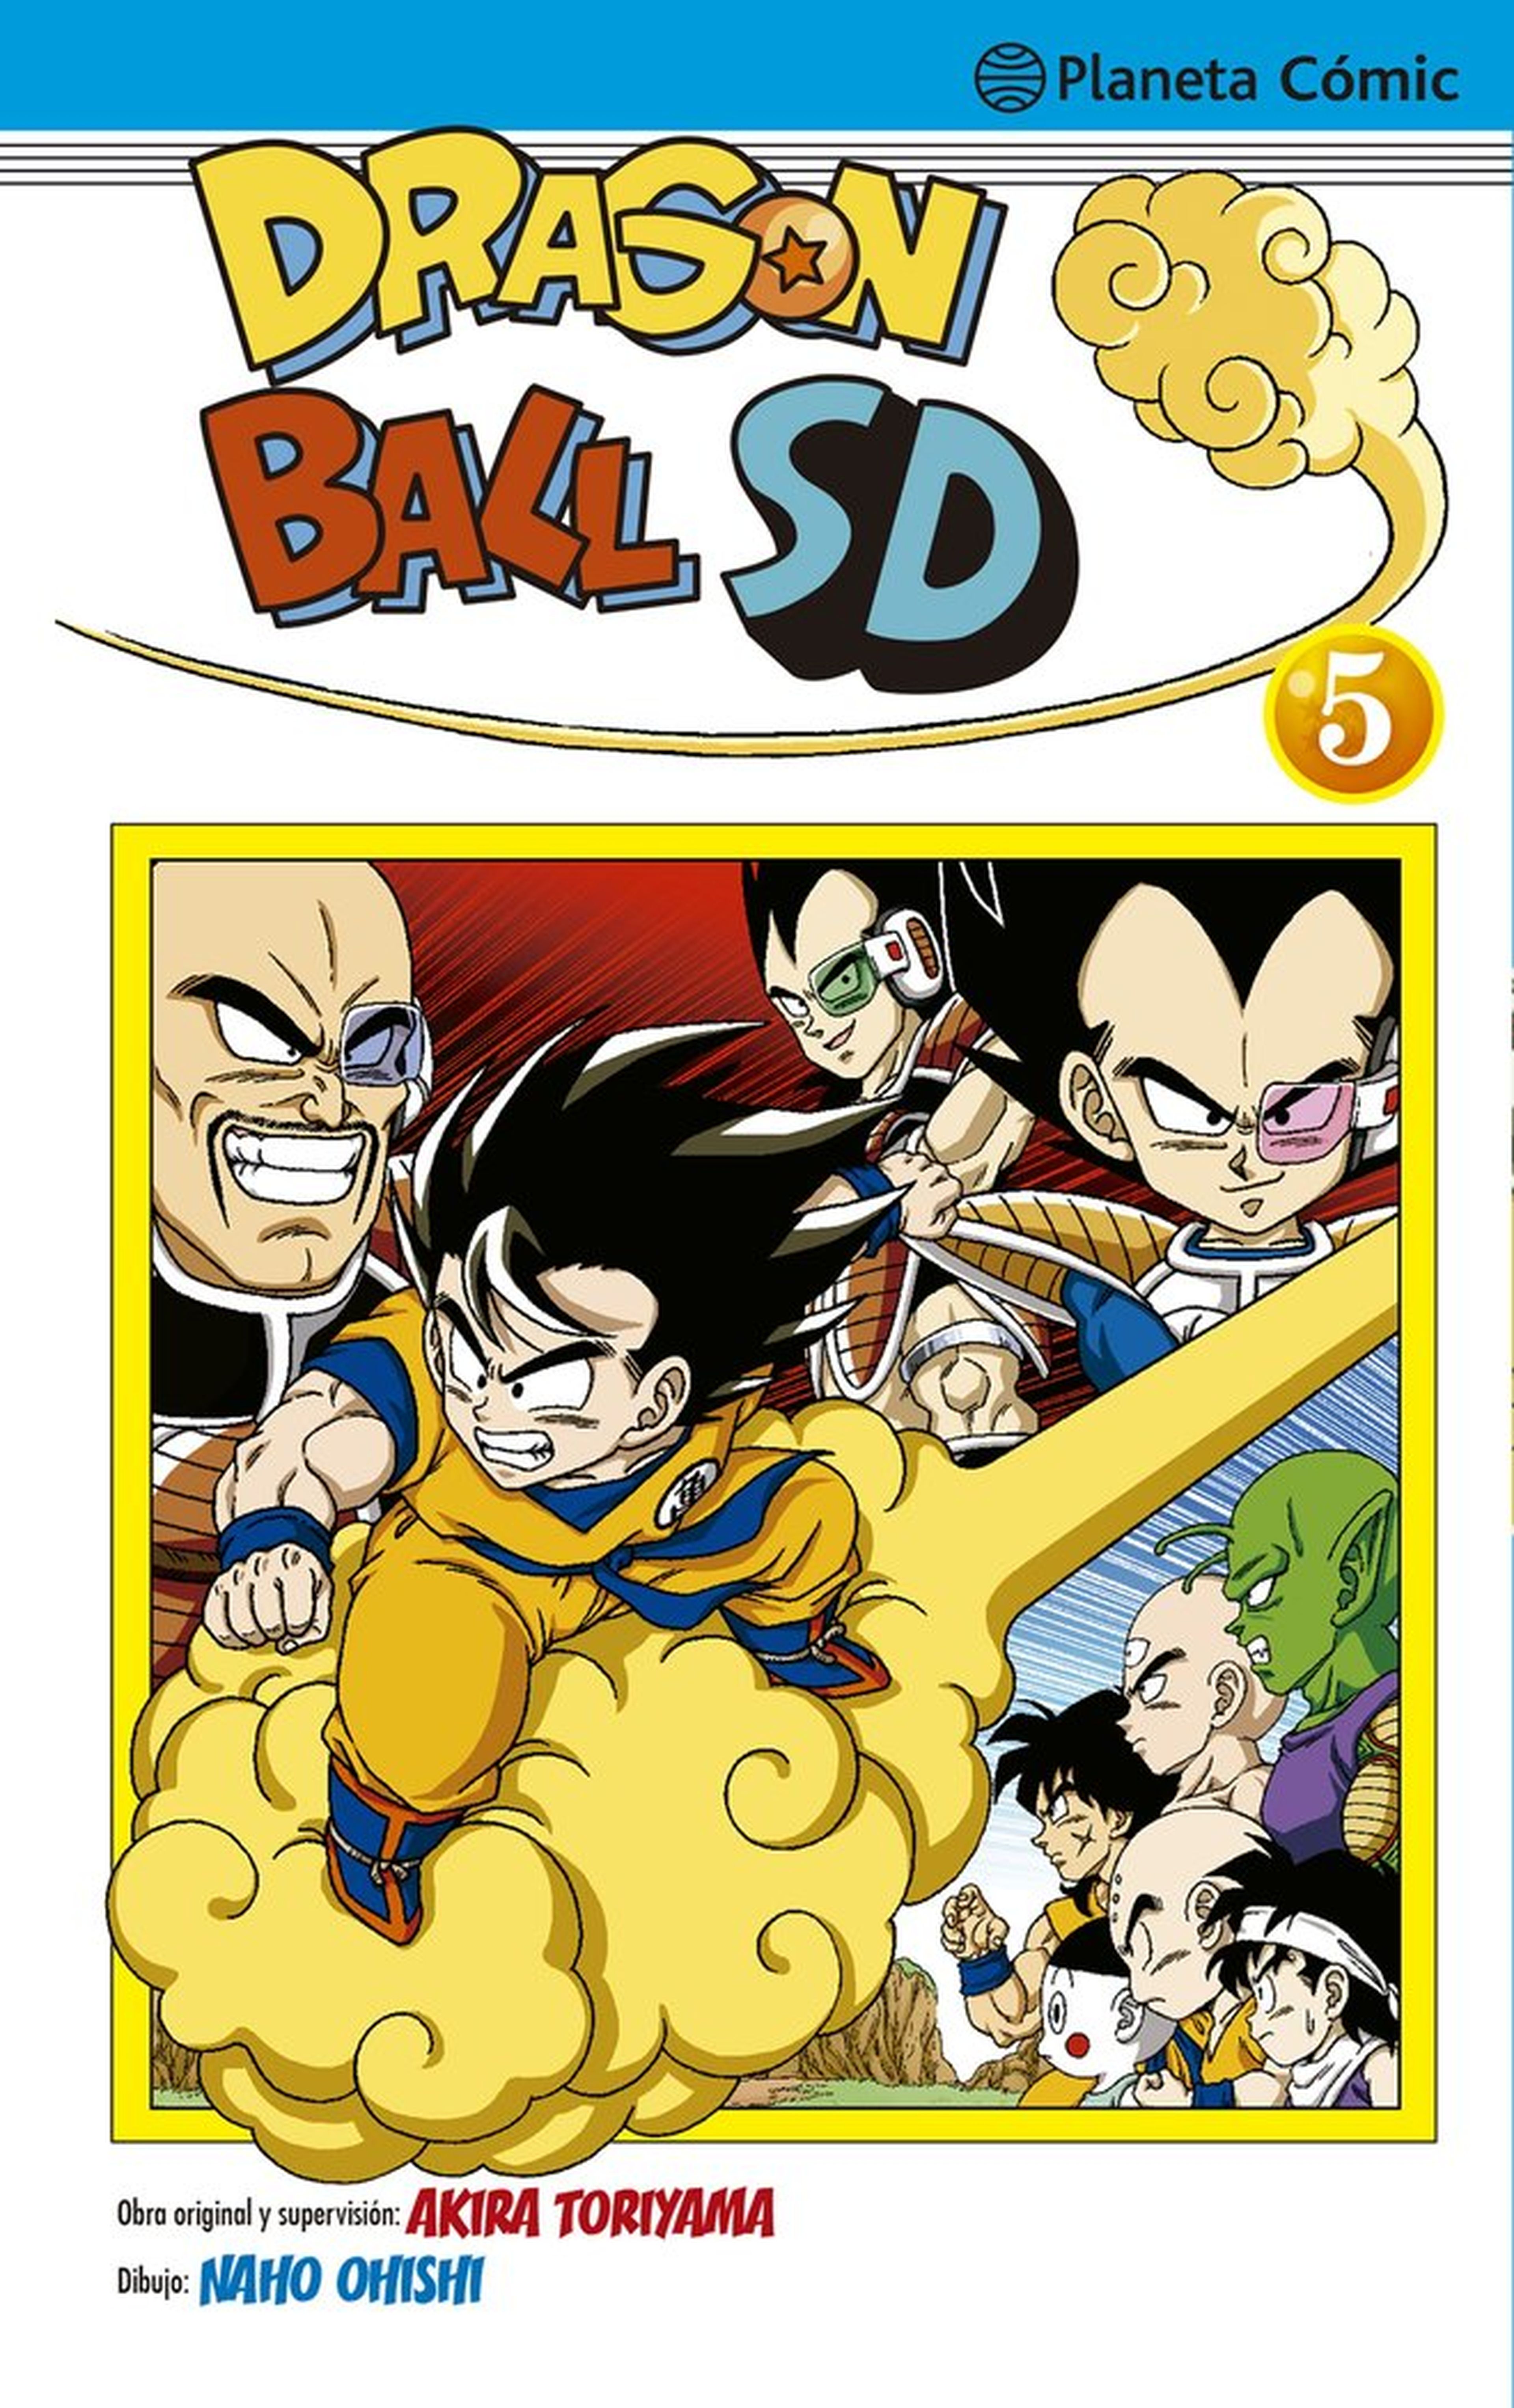 Dragon Ball SD - Portada y fecha de lanzamiento del tomo 5 en España. ¡El manga de la primera discípula de Akira Toriyama!